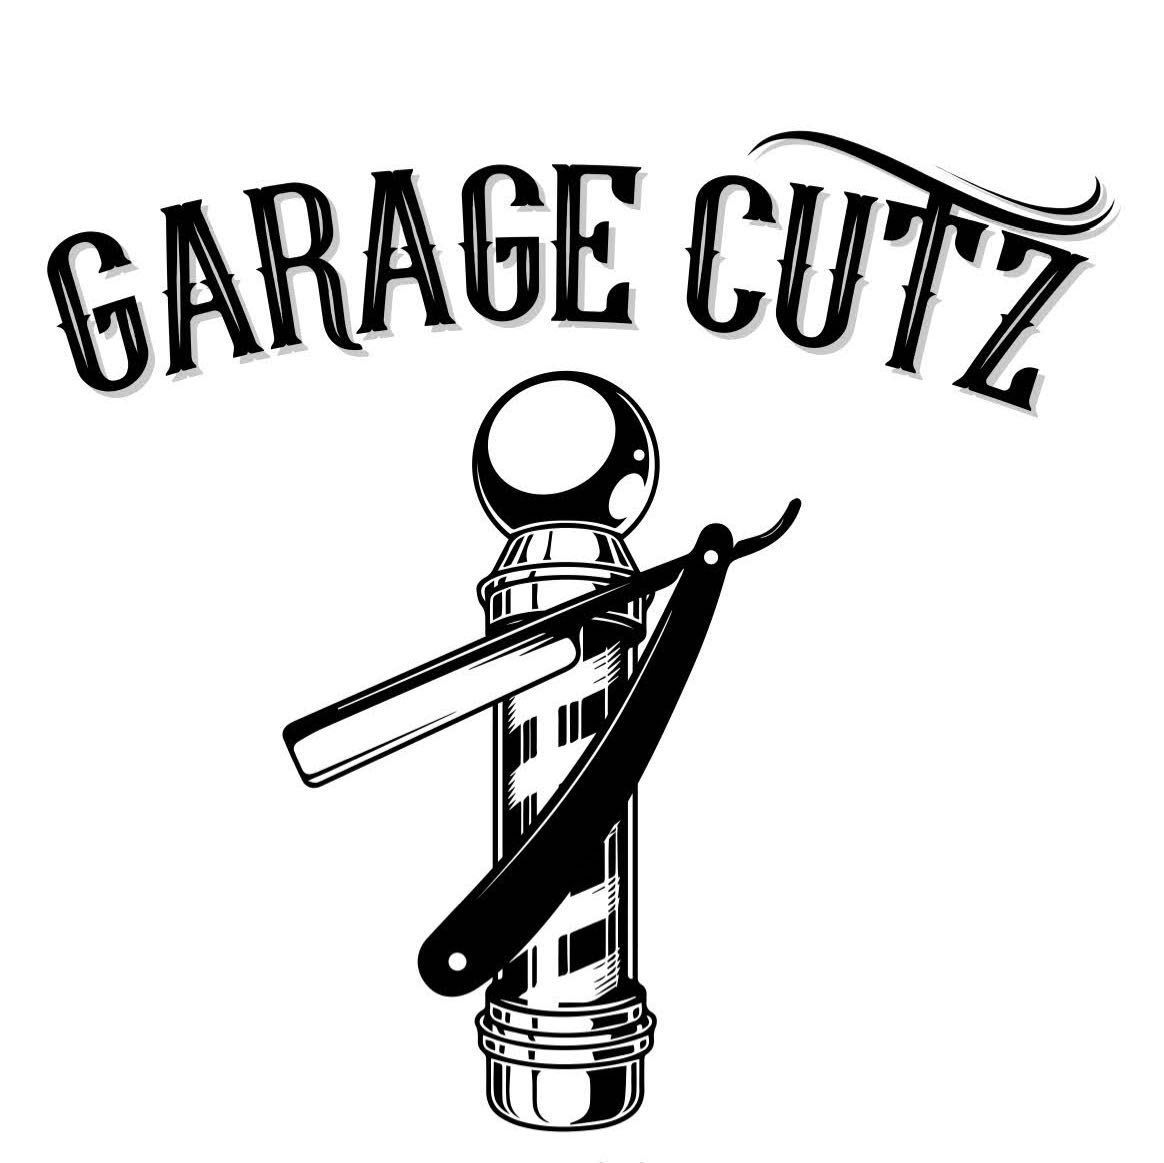 Garage Cutz, 1621 S Wilton Pl, Los Angeles, 90019